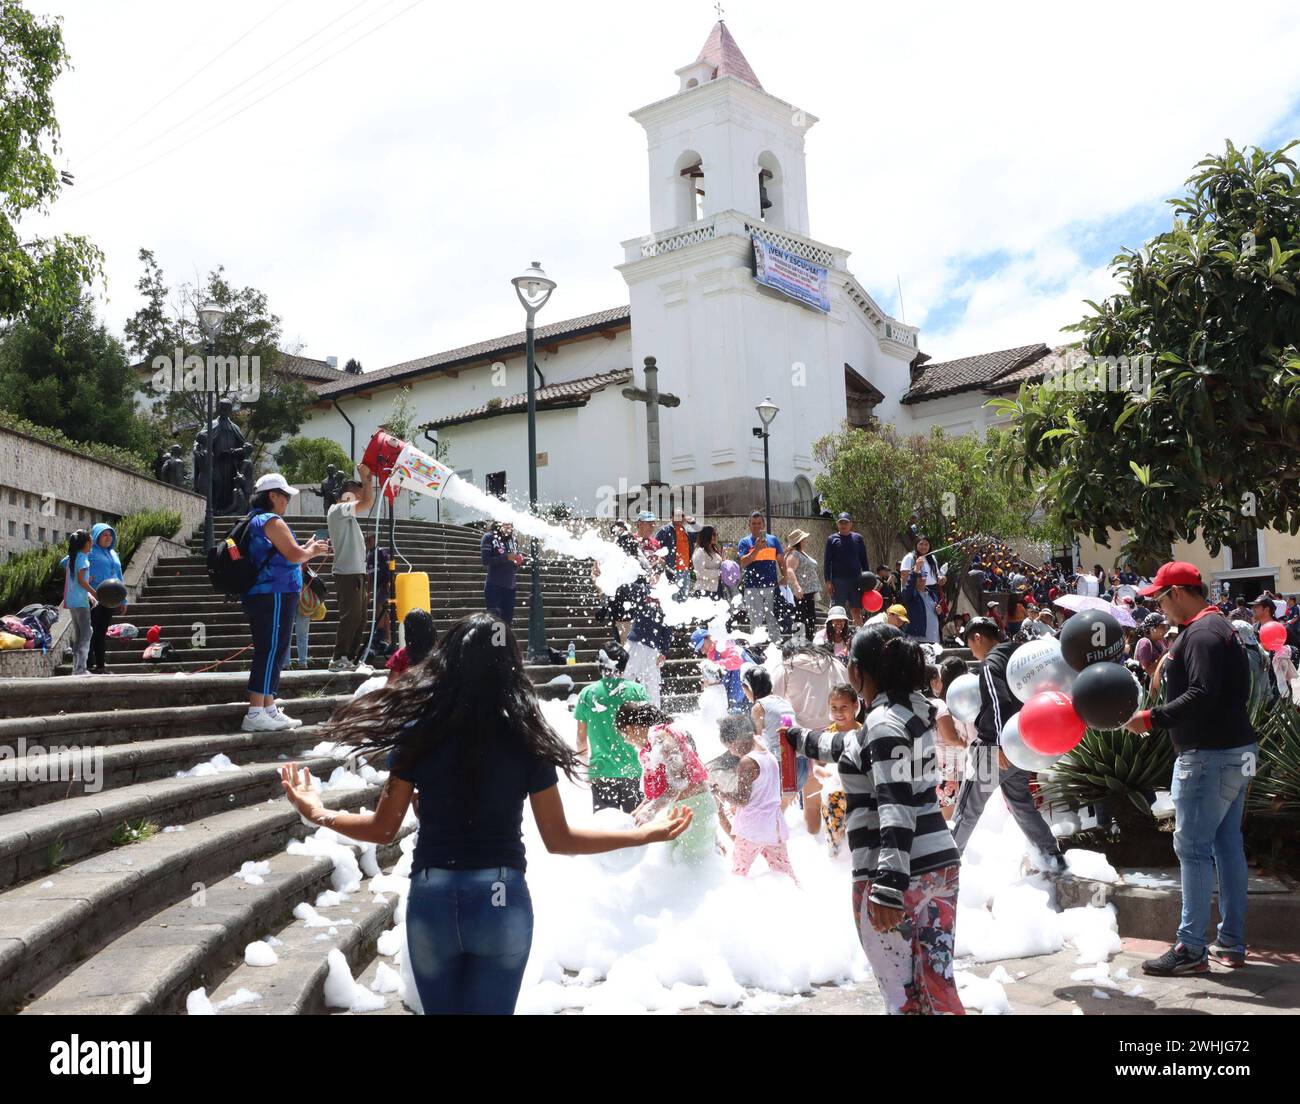 UIO-CARNAVAL-PLAZA-SAN-BLAS Quito, sabado 10 de febrero del 2024 Con Bandas de Paz, bailes tradicionales, canon de espuma, ninos, jovenes y adultos, festejan el feriado de carnaval, en la Plaza de San Blas, Centro Historico. Fotos:Rolando Enriquez/API Quito Pichincha Ecuador ACE-UIO-CARNAVAL-PLAZA-SAN-BLAS-78acf18bf2539cd4003c005c0b33601a *** UIO CARNAVAL PLAZA SAN BLAS Quito, Saturday February 10, 2024 With bands of peace, traditional dances, foam canon, children, youth and adults, celebrate the carnival holiday in the Plaza de San Blas, Centro Historico Photos Rolando Enriquez API Quito Pich Stock Photo